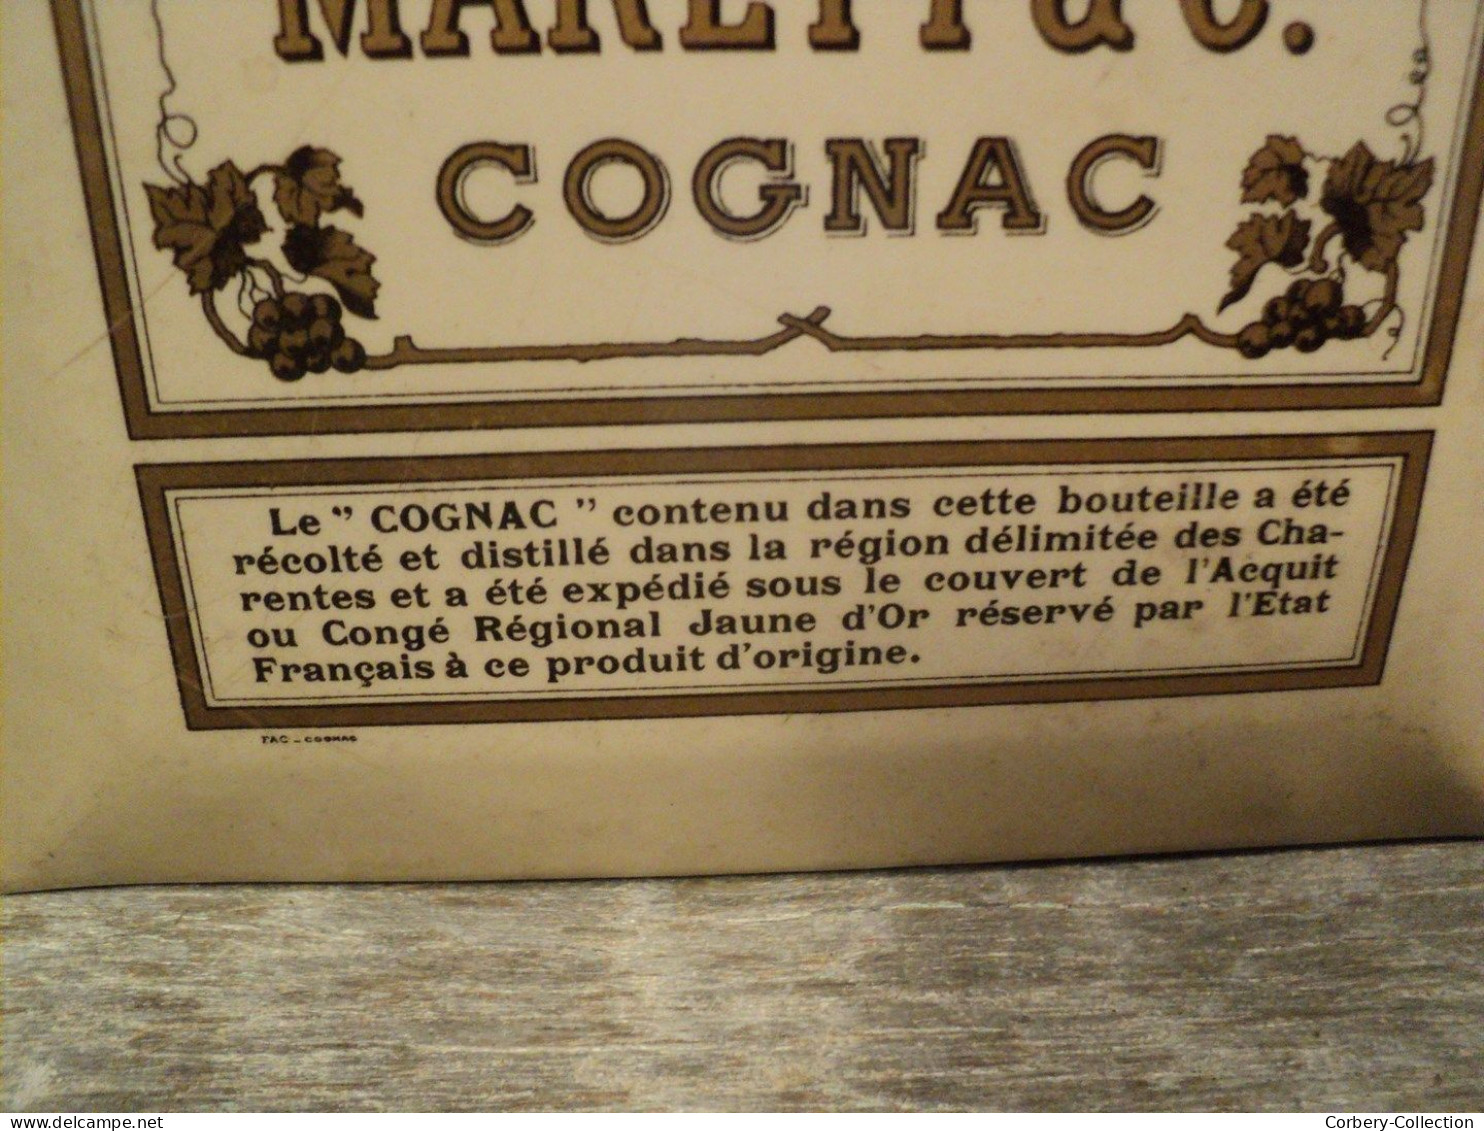 Glacoïde Publicitaire Cognac Marett & Co Fondée En 1822. - Placas De Cartón